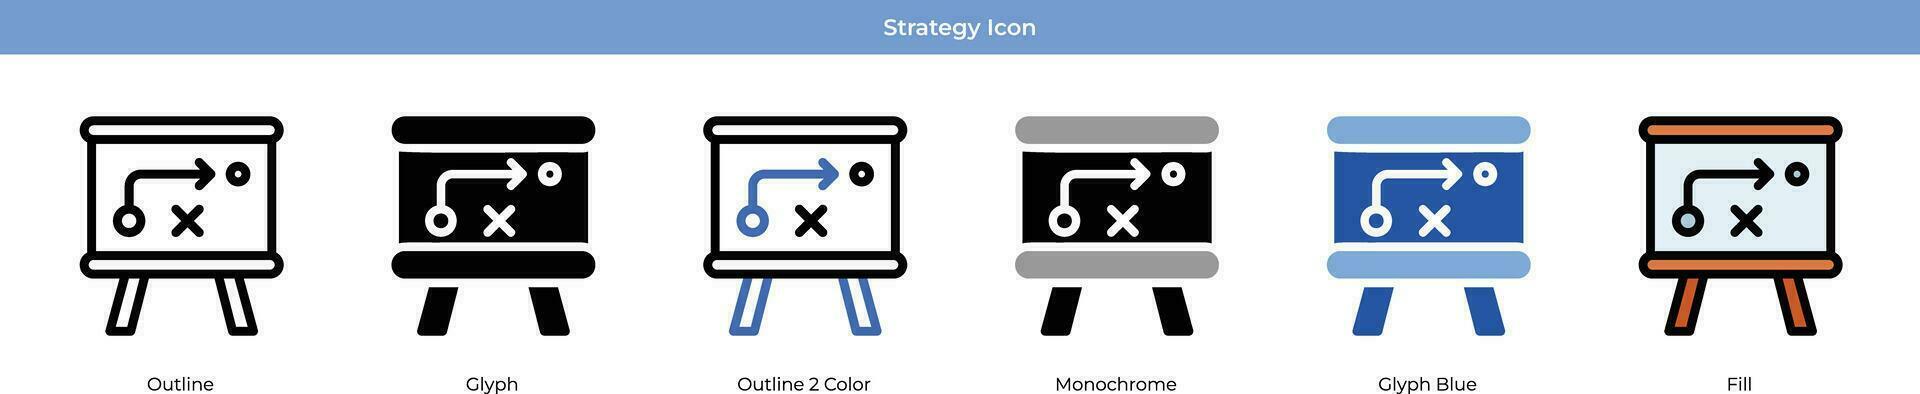 conjunto de iconos de estrategia vector